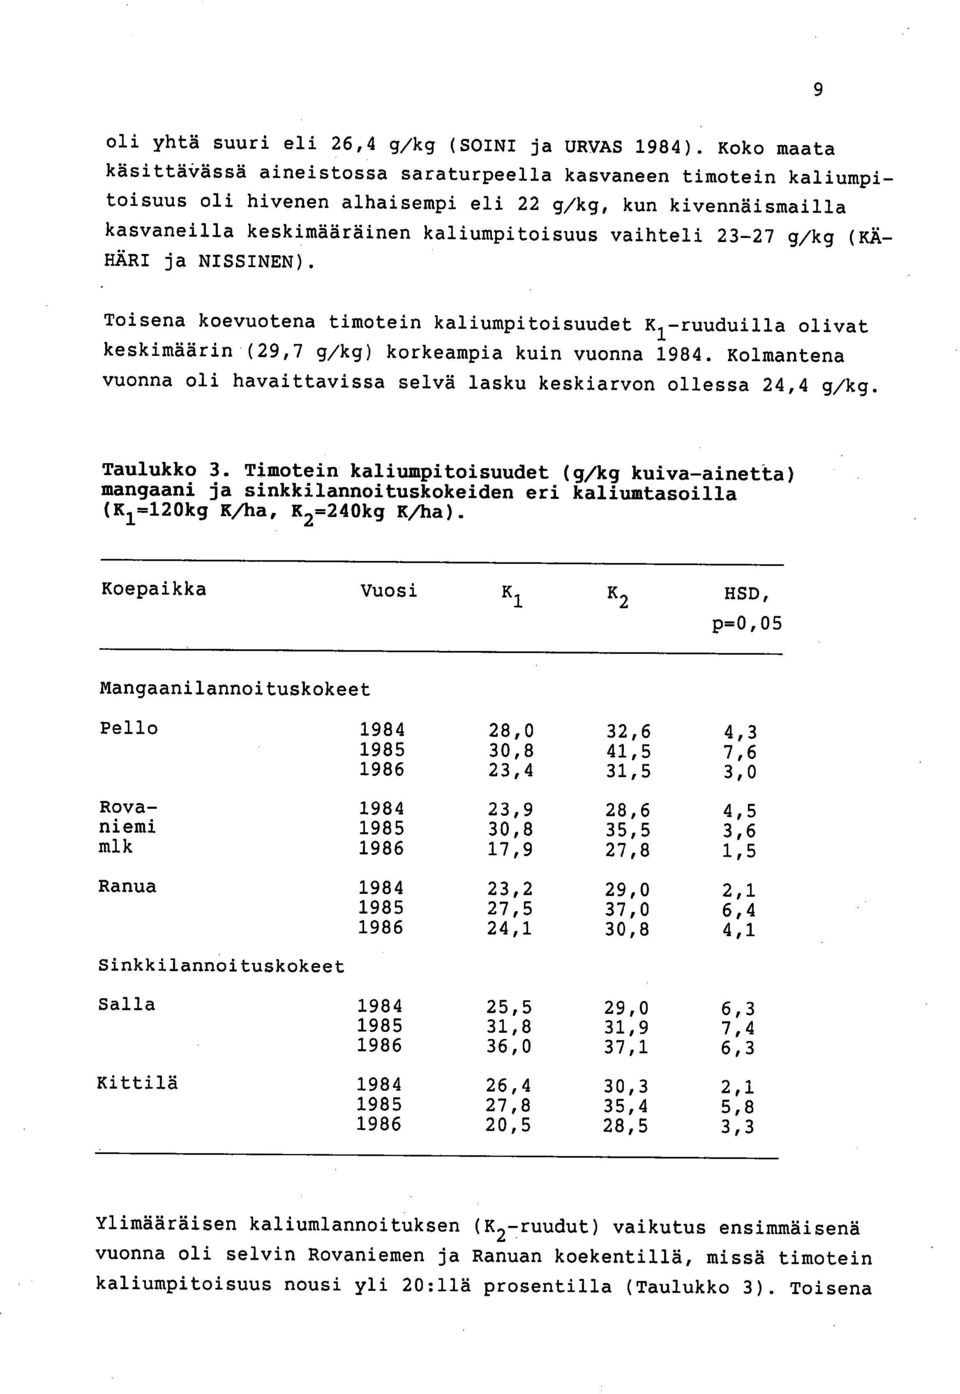 g/kg (KÄ- HÄRI ja NISSINEN). Toisena koevuotena timotein kaliumpitoisuudet K1-ruuduilla olivat keskimäärin (29,7 g/kg) korkeampia kuin vuonna 1984.